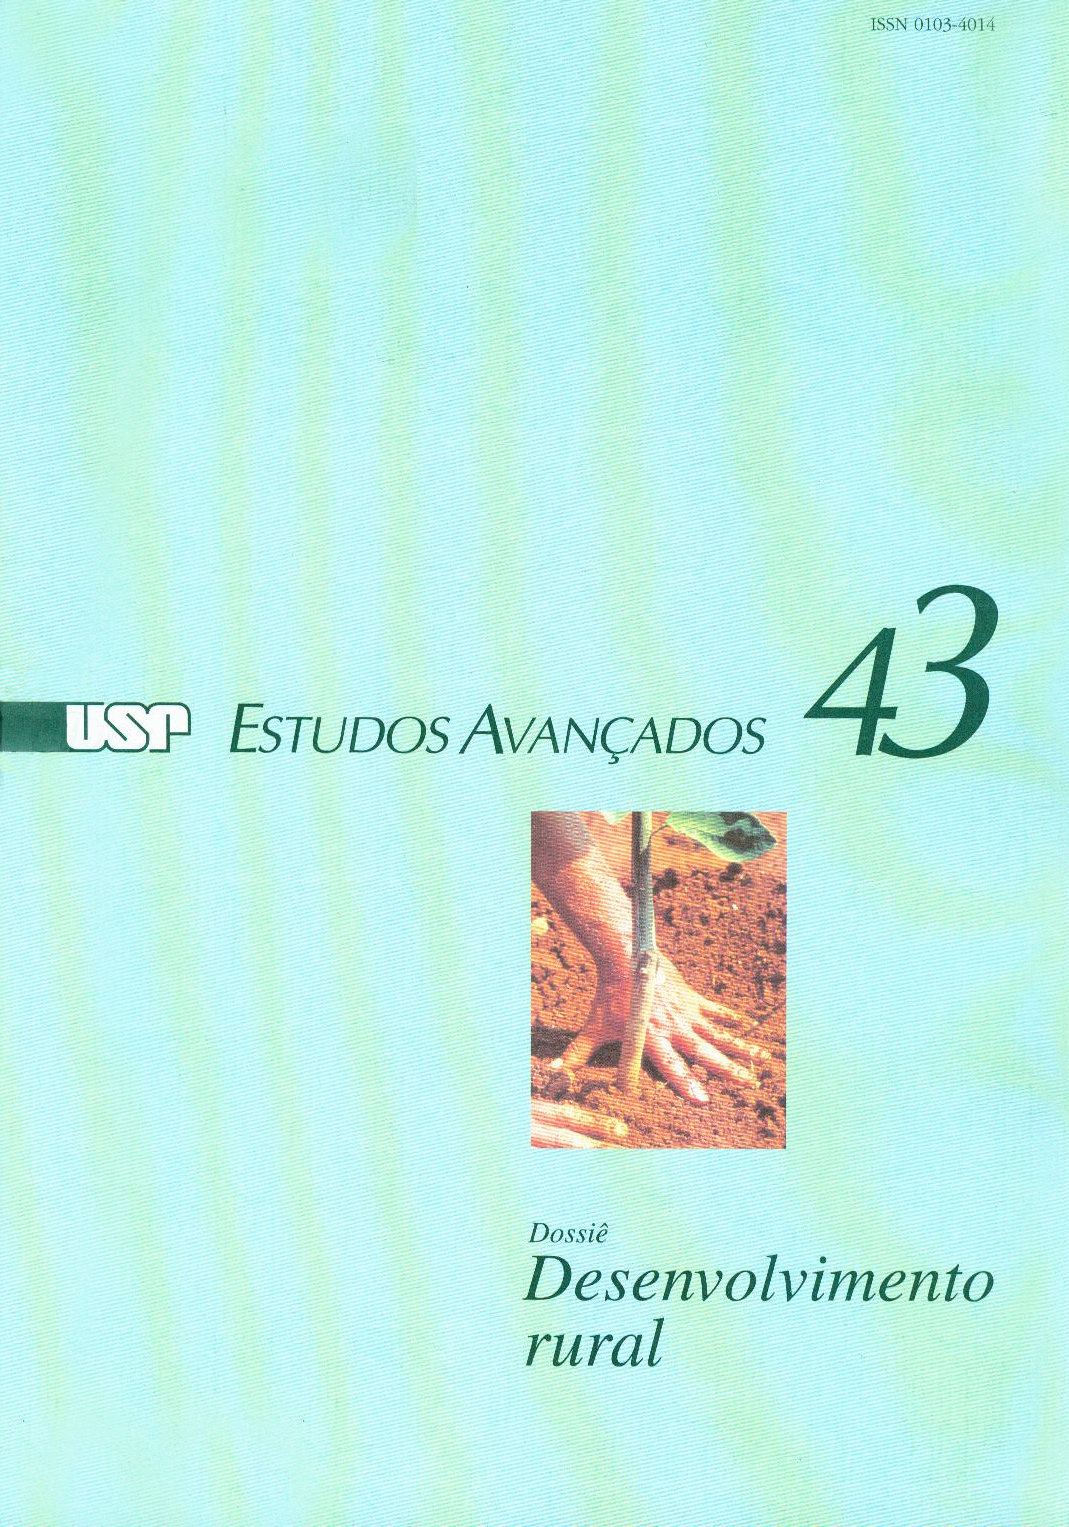 					View Vol. 15 No. 43 (2001): Dossiê Desenvolvimento Rural
				